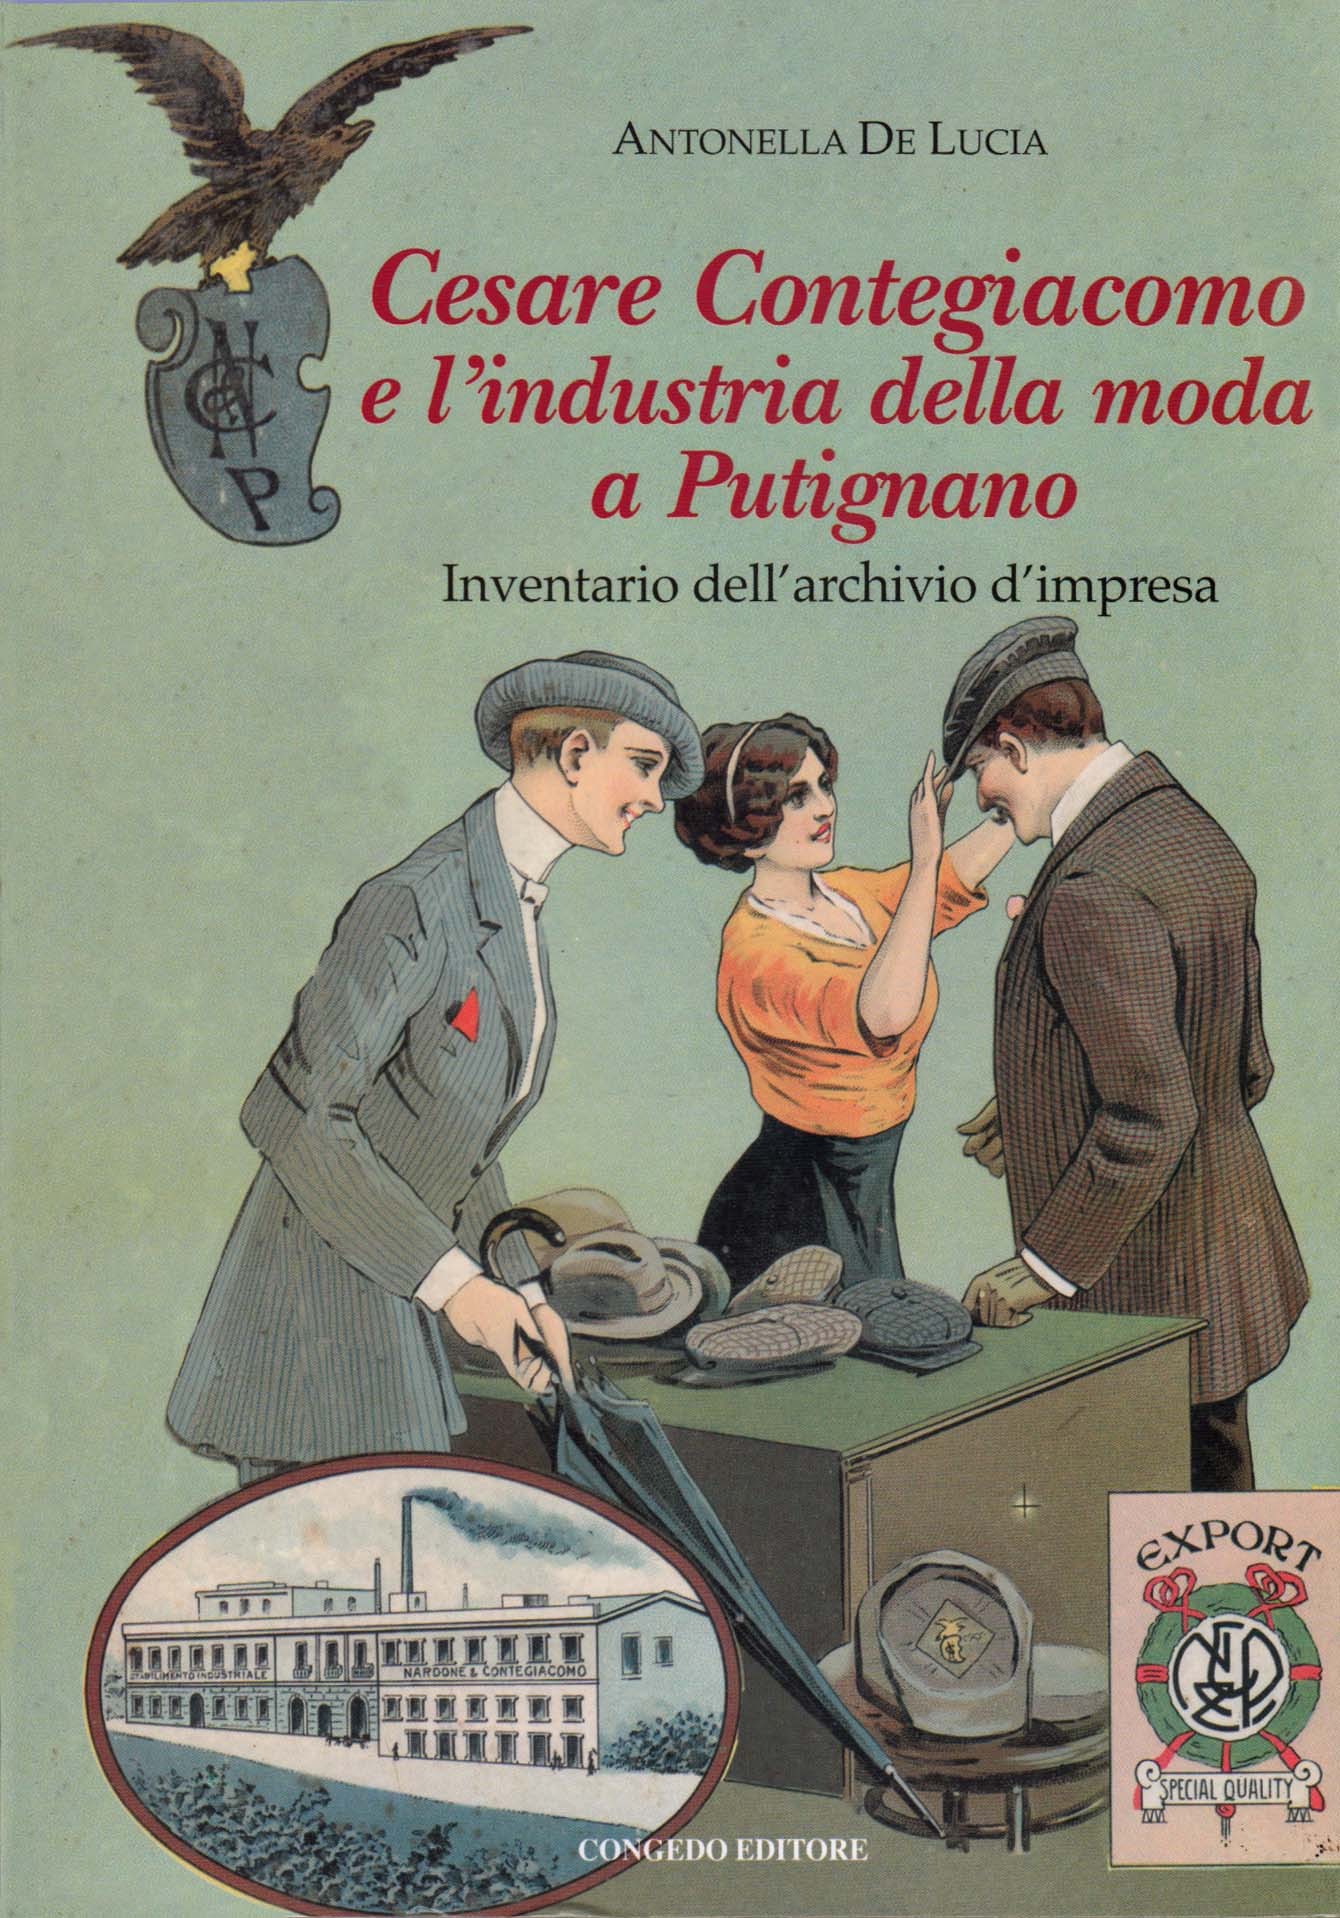 Cesare Contegiacomo e l'industria della moda a Putignano. Inventario dell'archivio d'impresa.